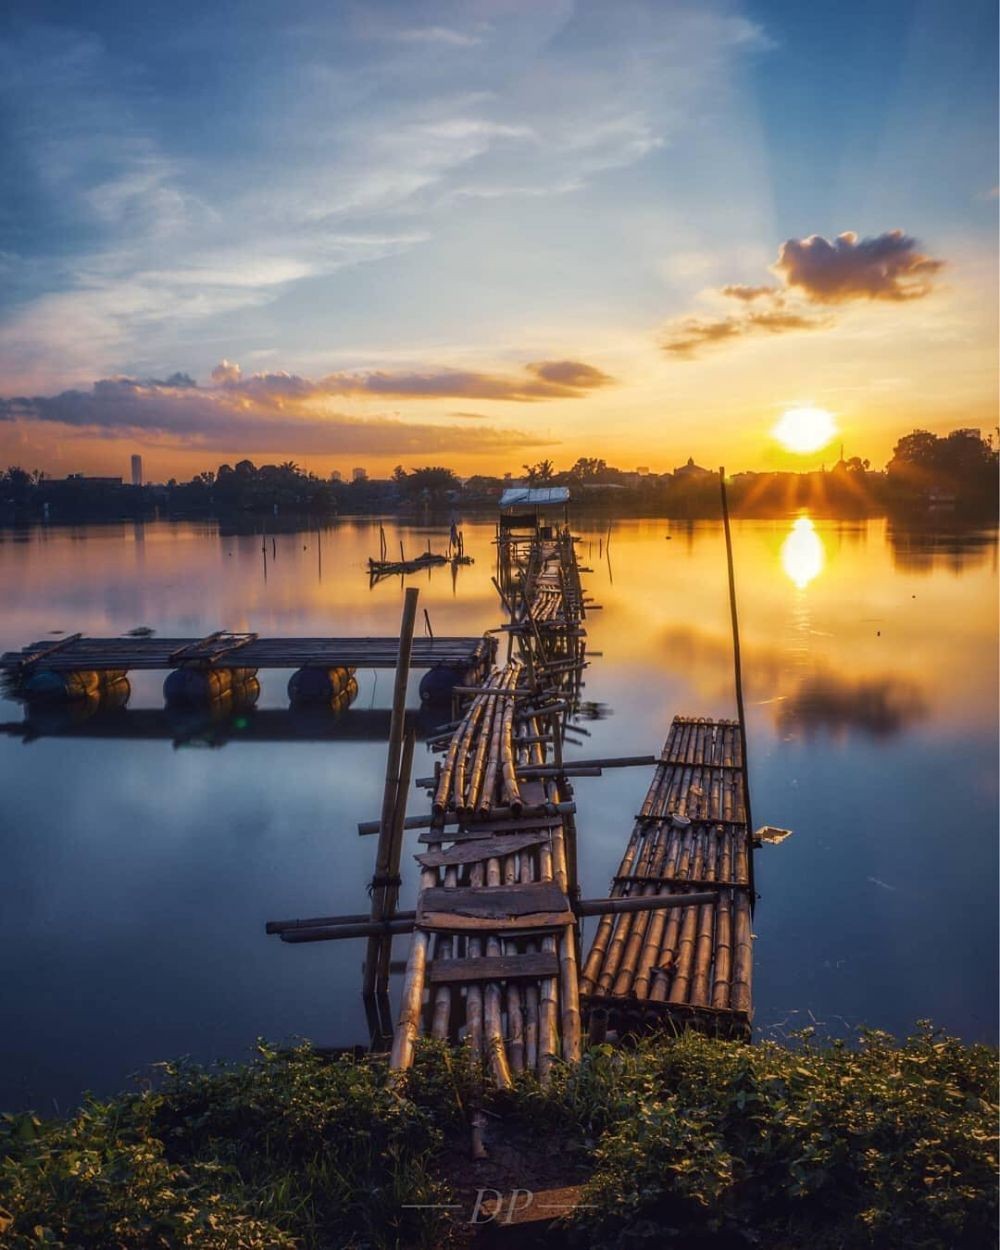 10 Tempat Wisata Di Tangerang Yang Seru Dan Paling Hits